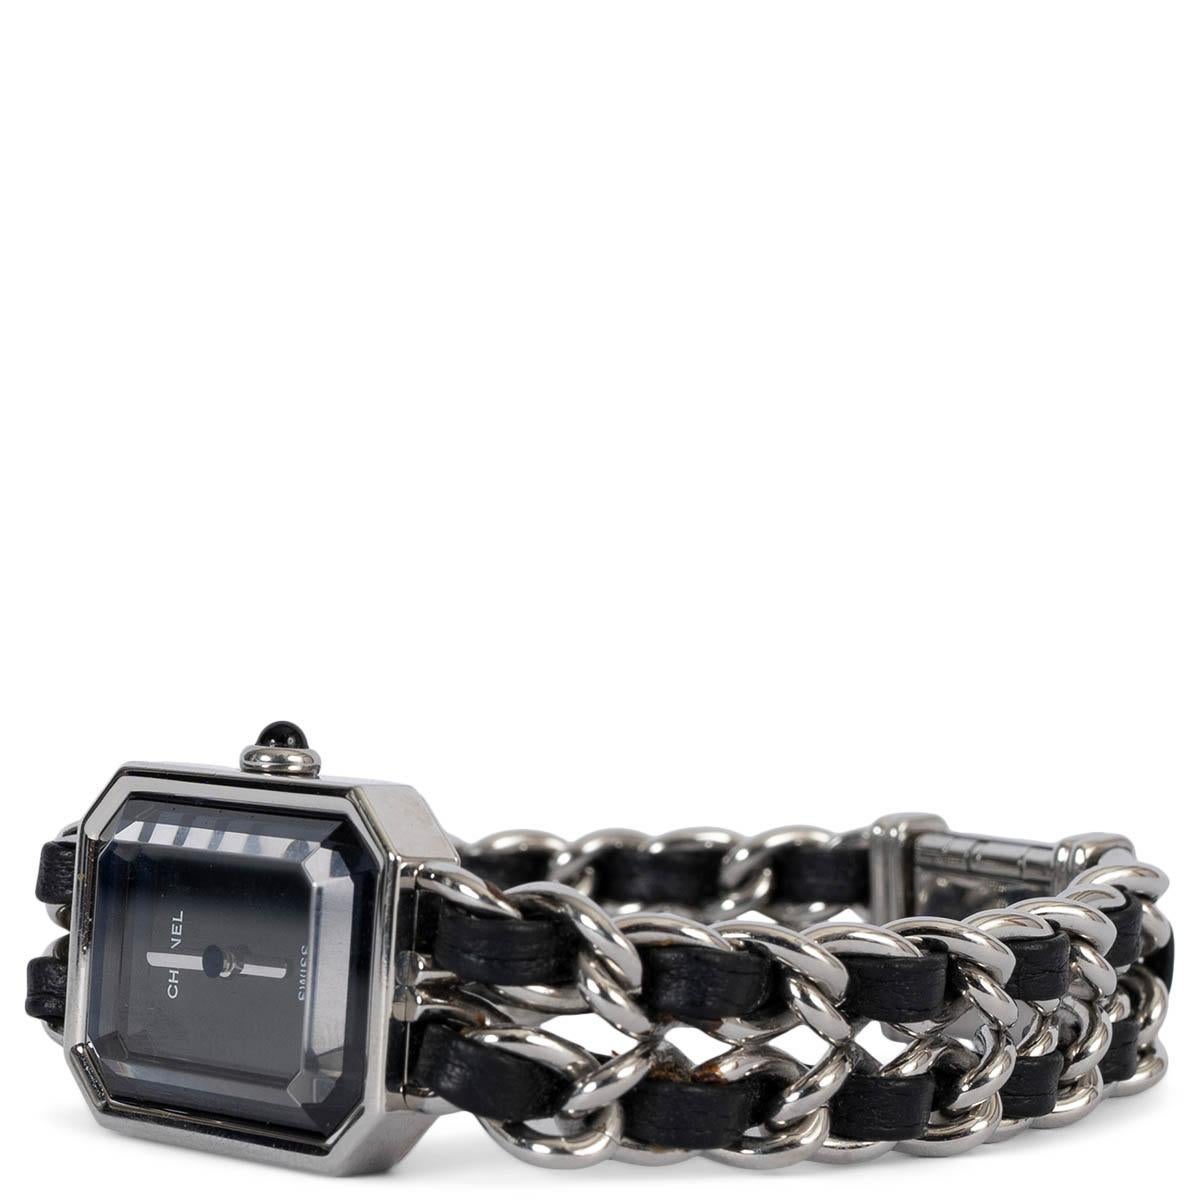 100% echte Chanel Première Uhr aus Stahl mit schwarzem Lederband Icon Chain und schwarzem Lackzifferblatt. Stahlkrone mit Onyx-Cabochon und Schließe mit Deckel. Wurde getragen und ist in ausgezeichnetem Zustand. Wird mit Etui geliefert.